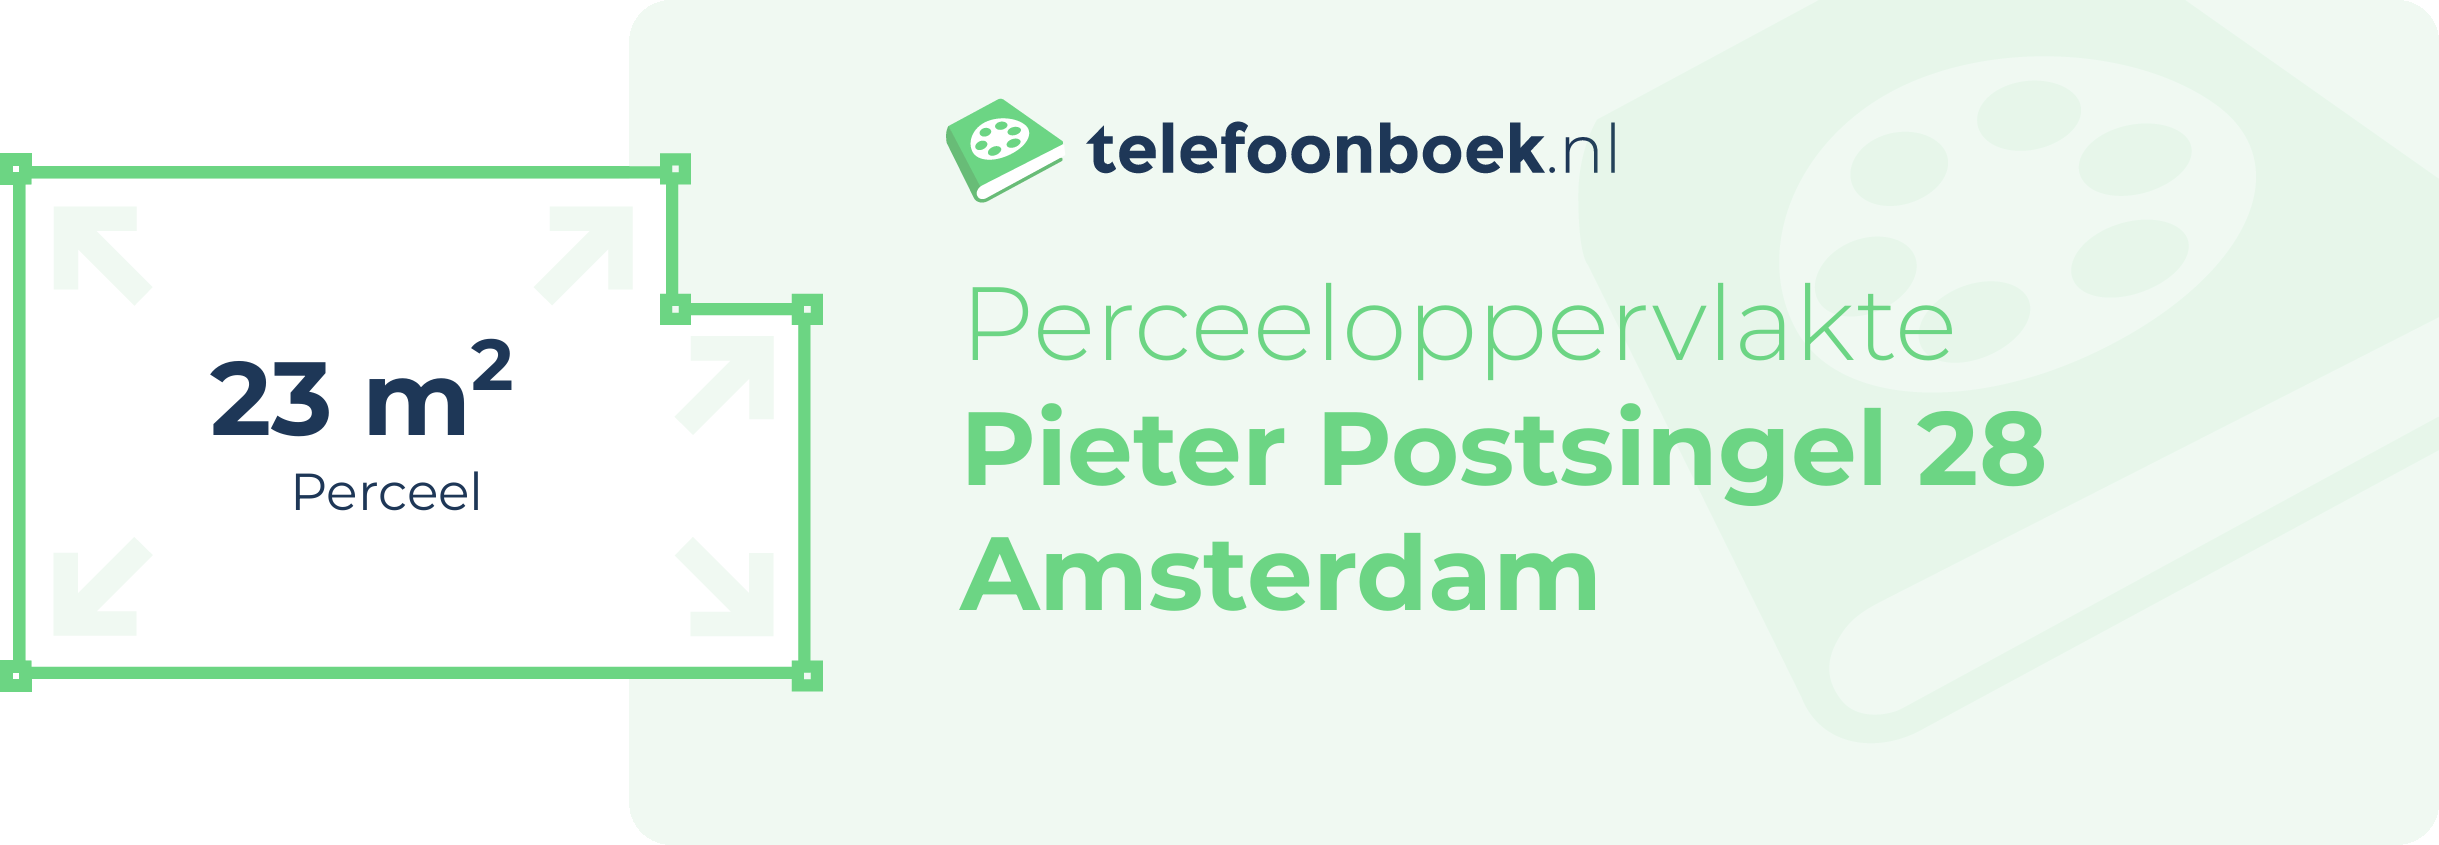 Perceeloppervlakte Pieter Postsingel 28 Amsterdam